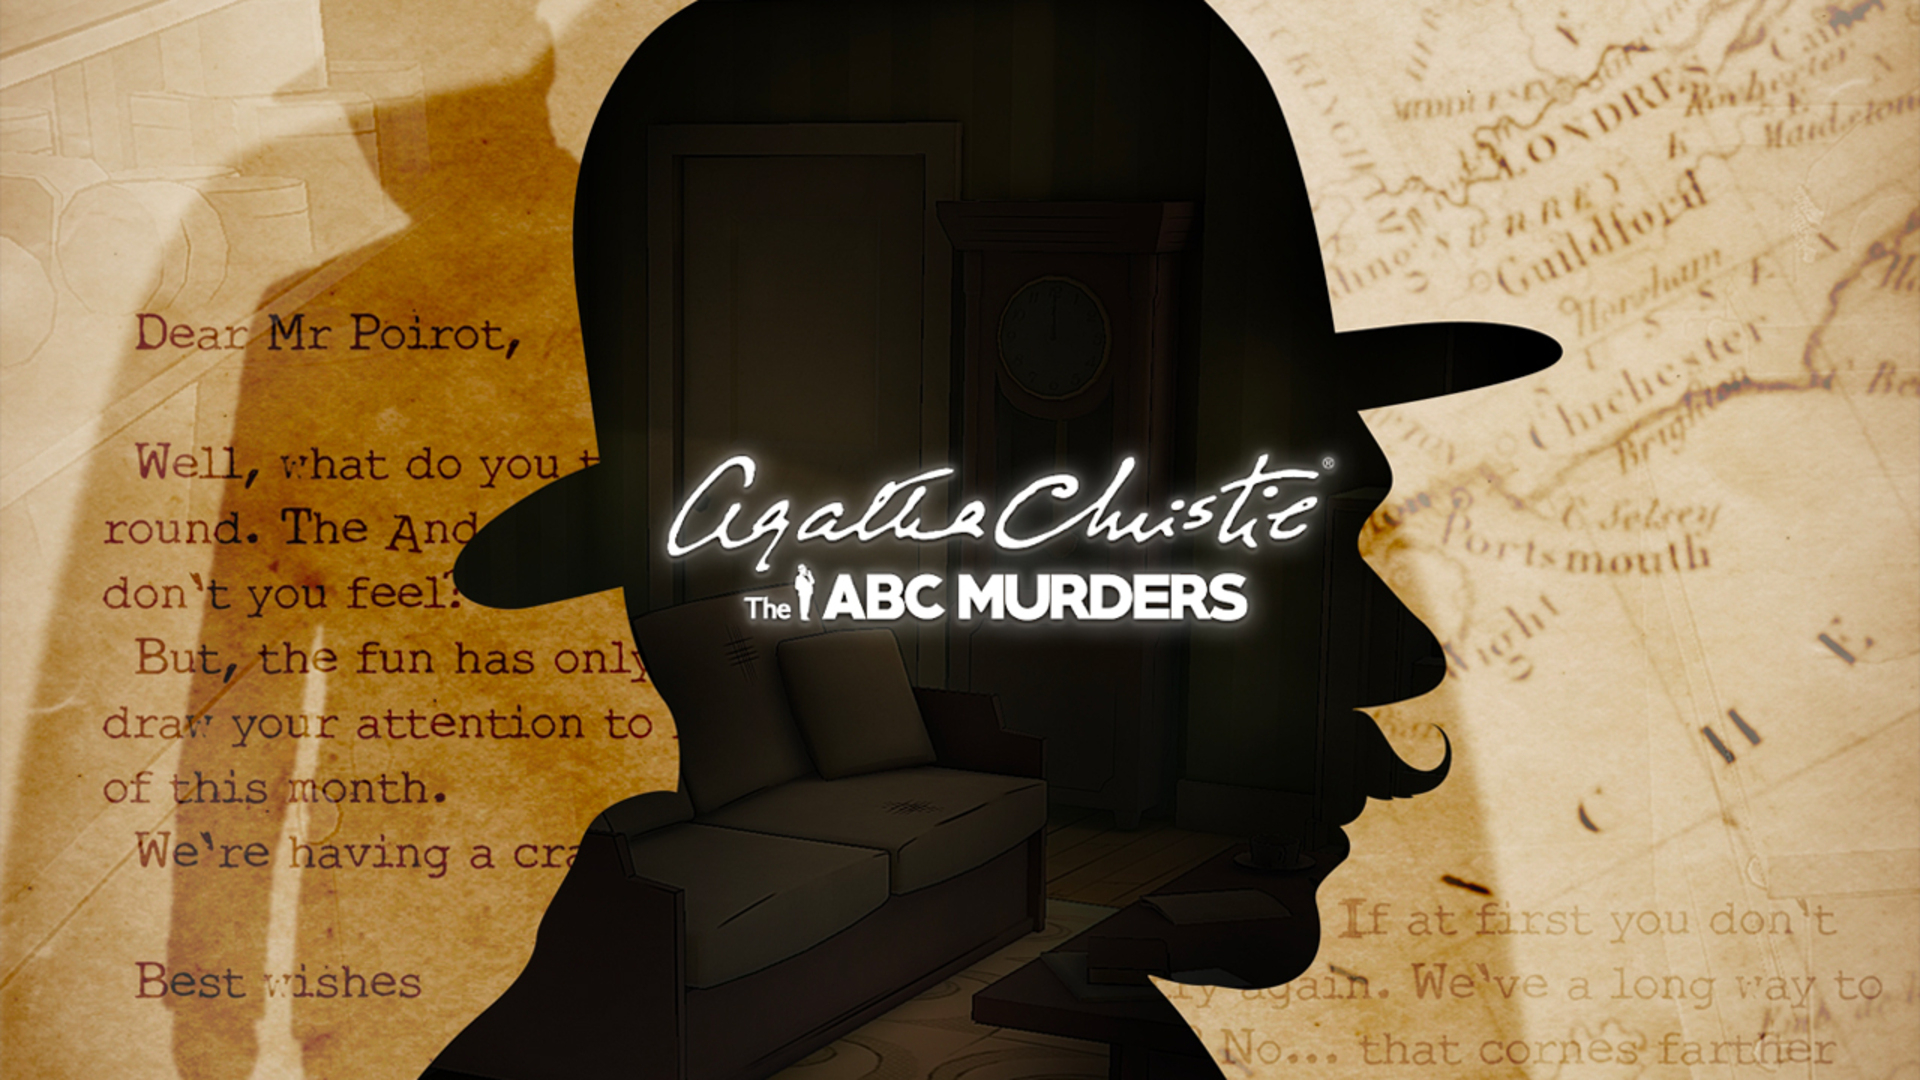 Agatha Christie - The ABC Murders